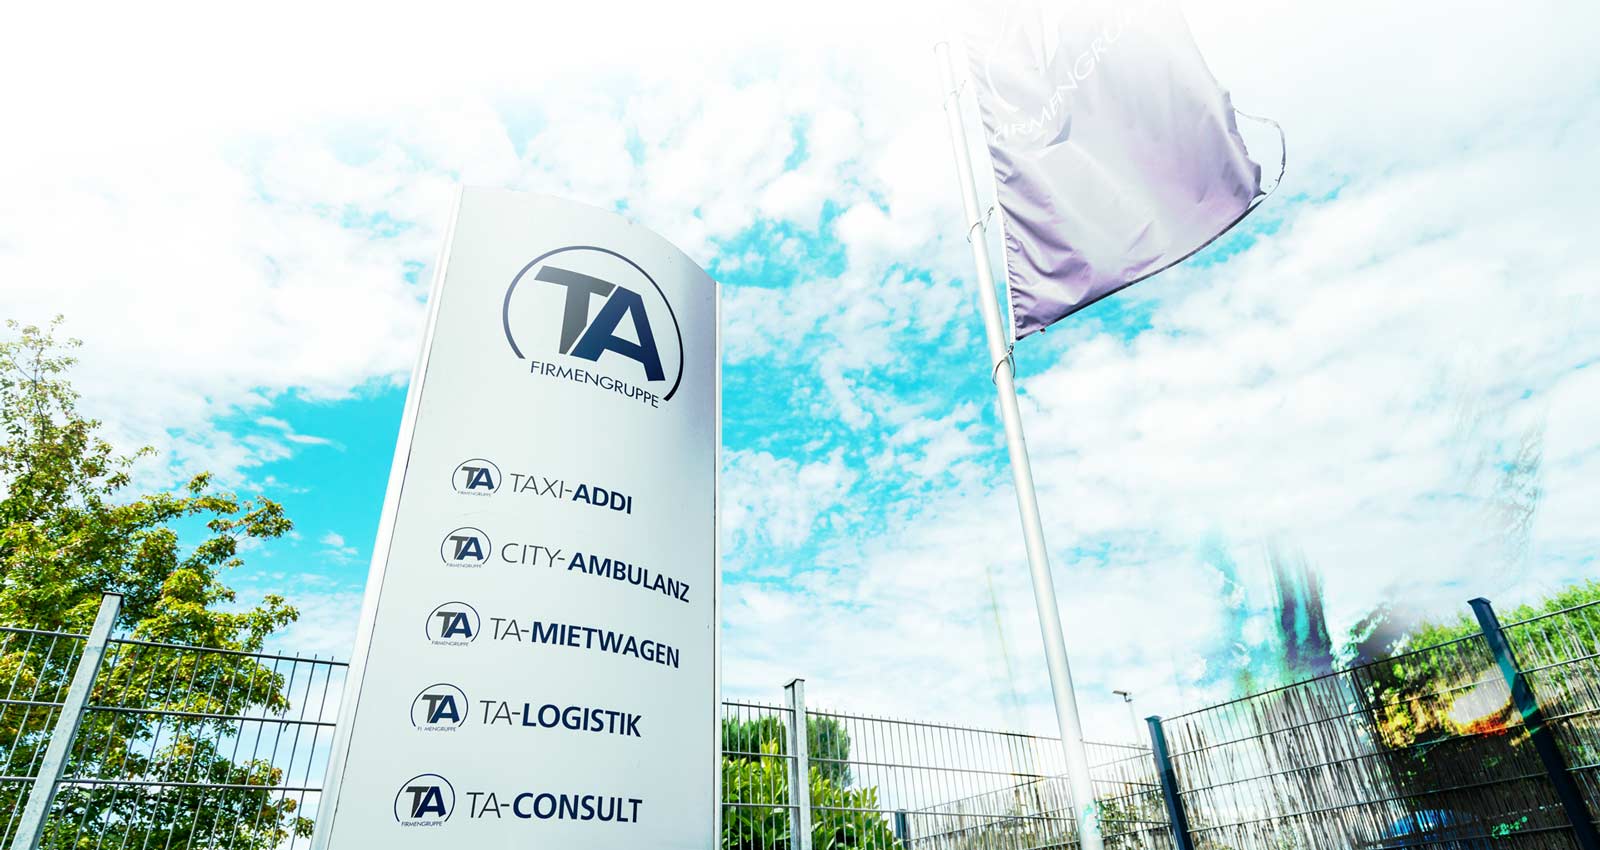 Firmenschild der TA-Firmengruppe mit einer Fahne im Hintergrund